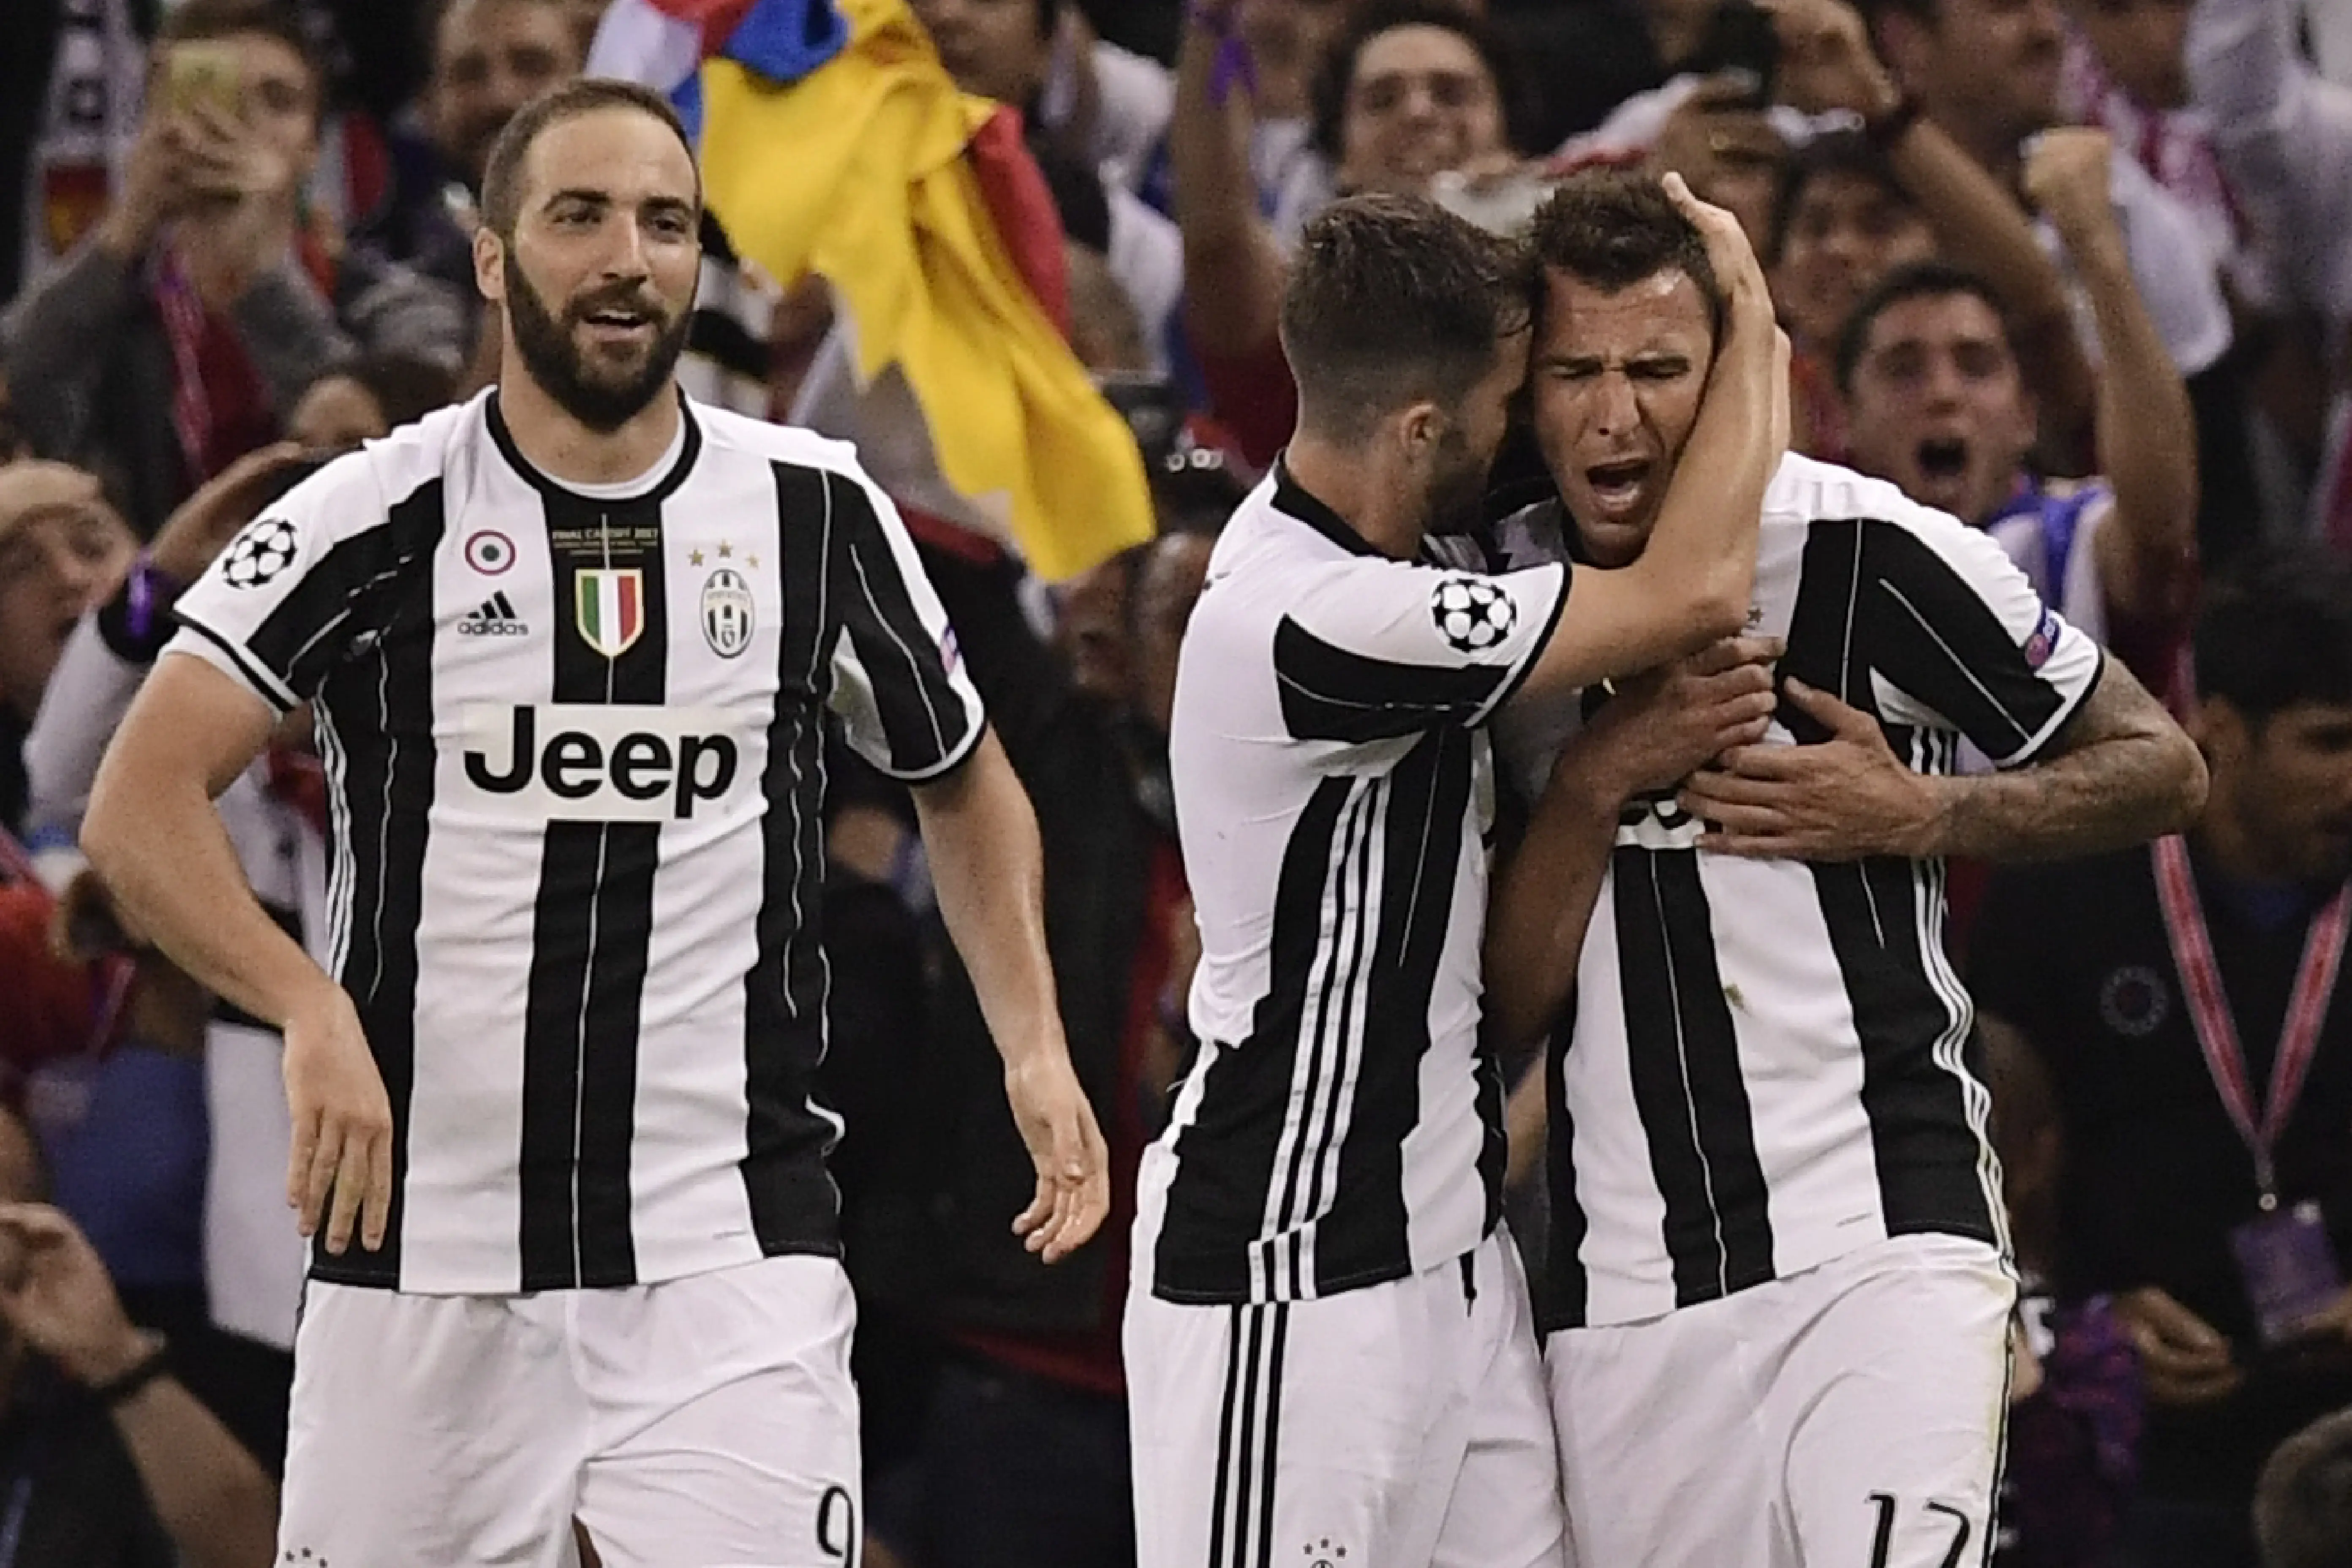 Pemain Juventus rayakan gol Mario Mandzukic ke gawang Real Madrid (Javier SORIANO / AFP)